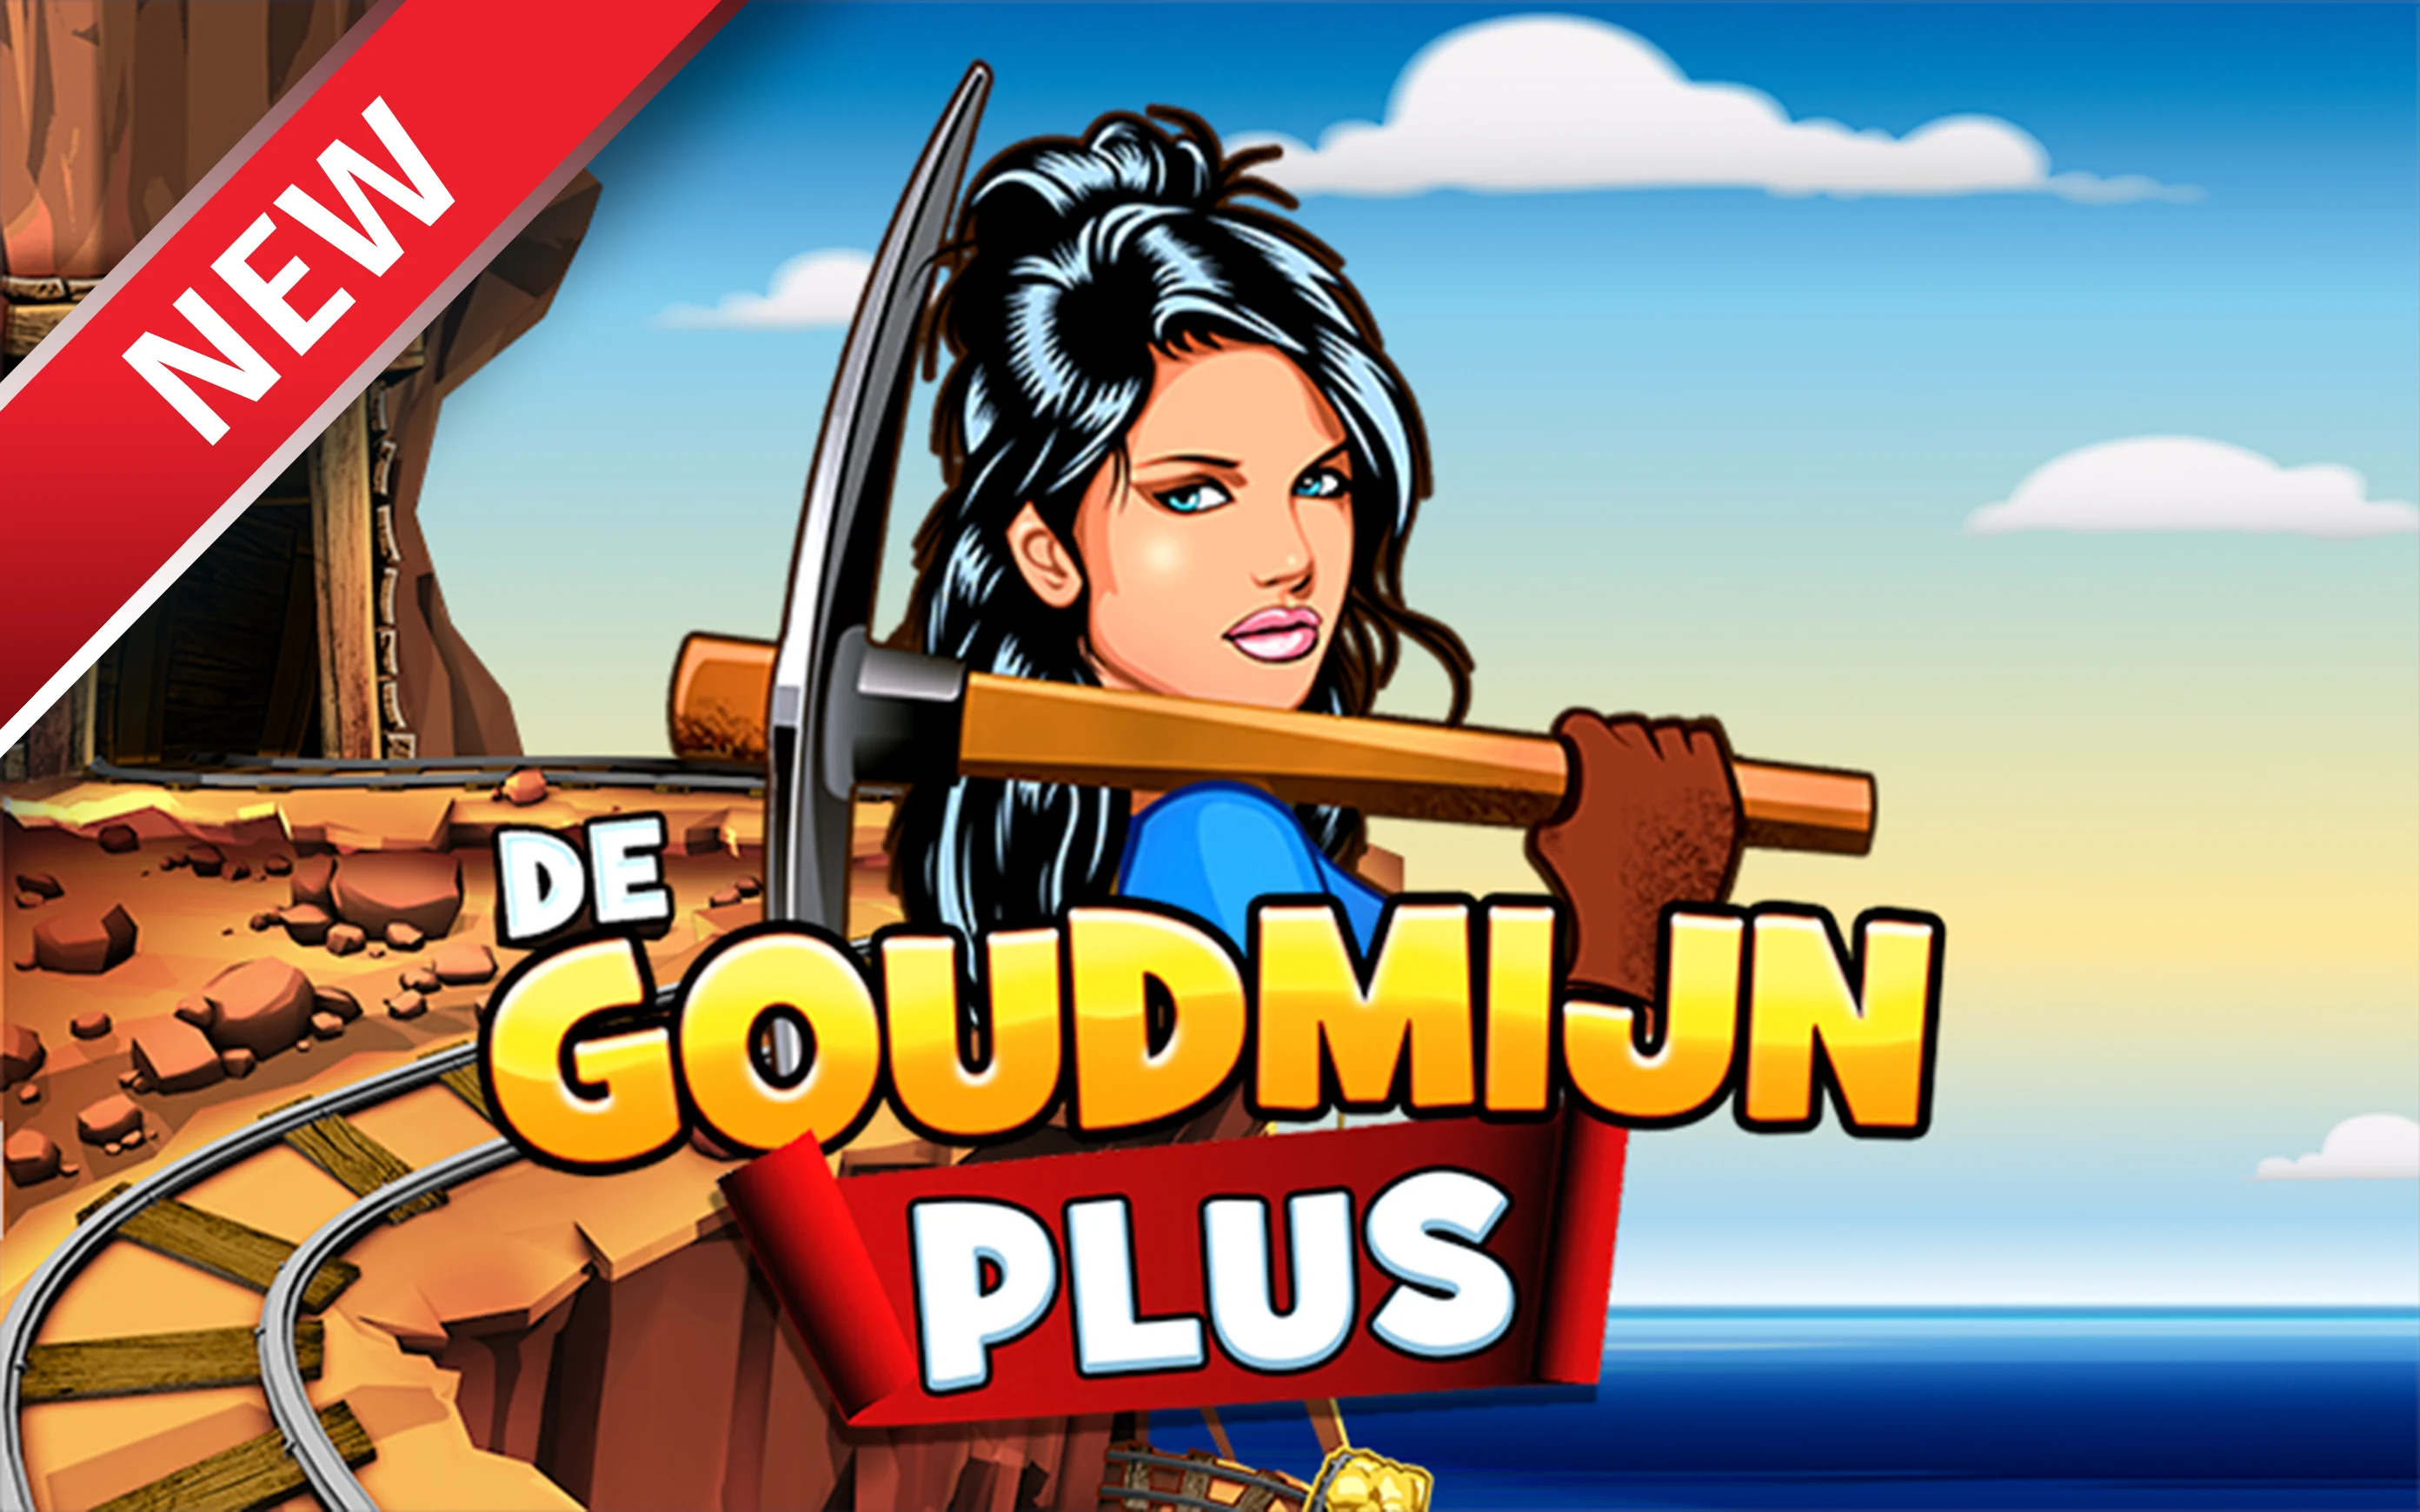 Play De Goudmijn Plus on StarcasinoBE online casino